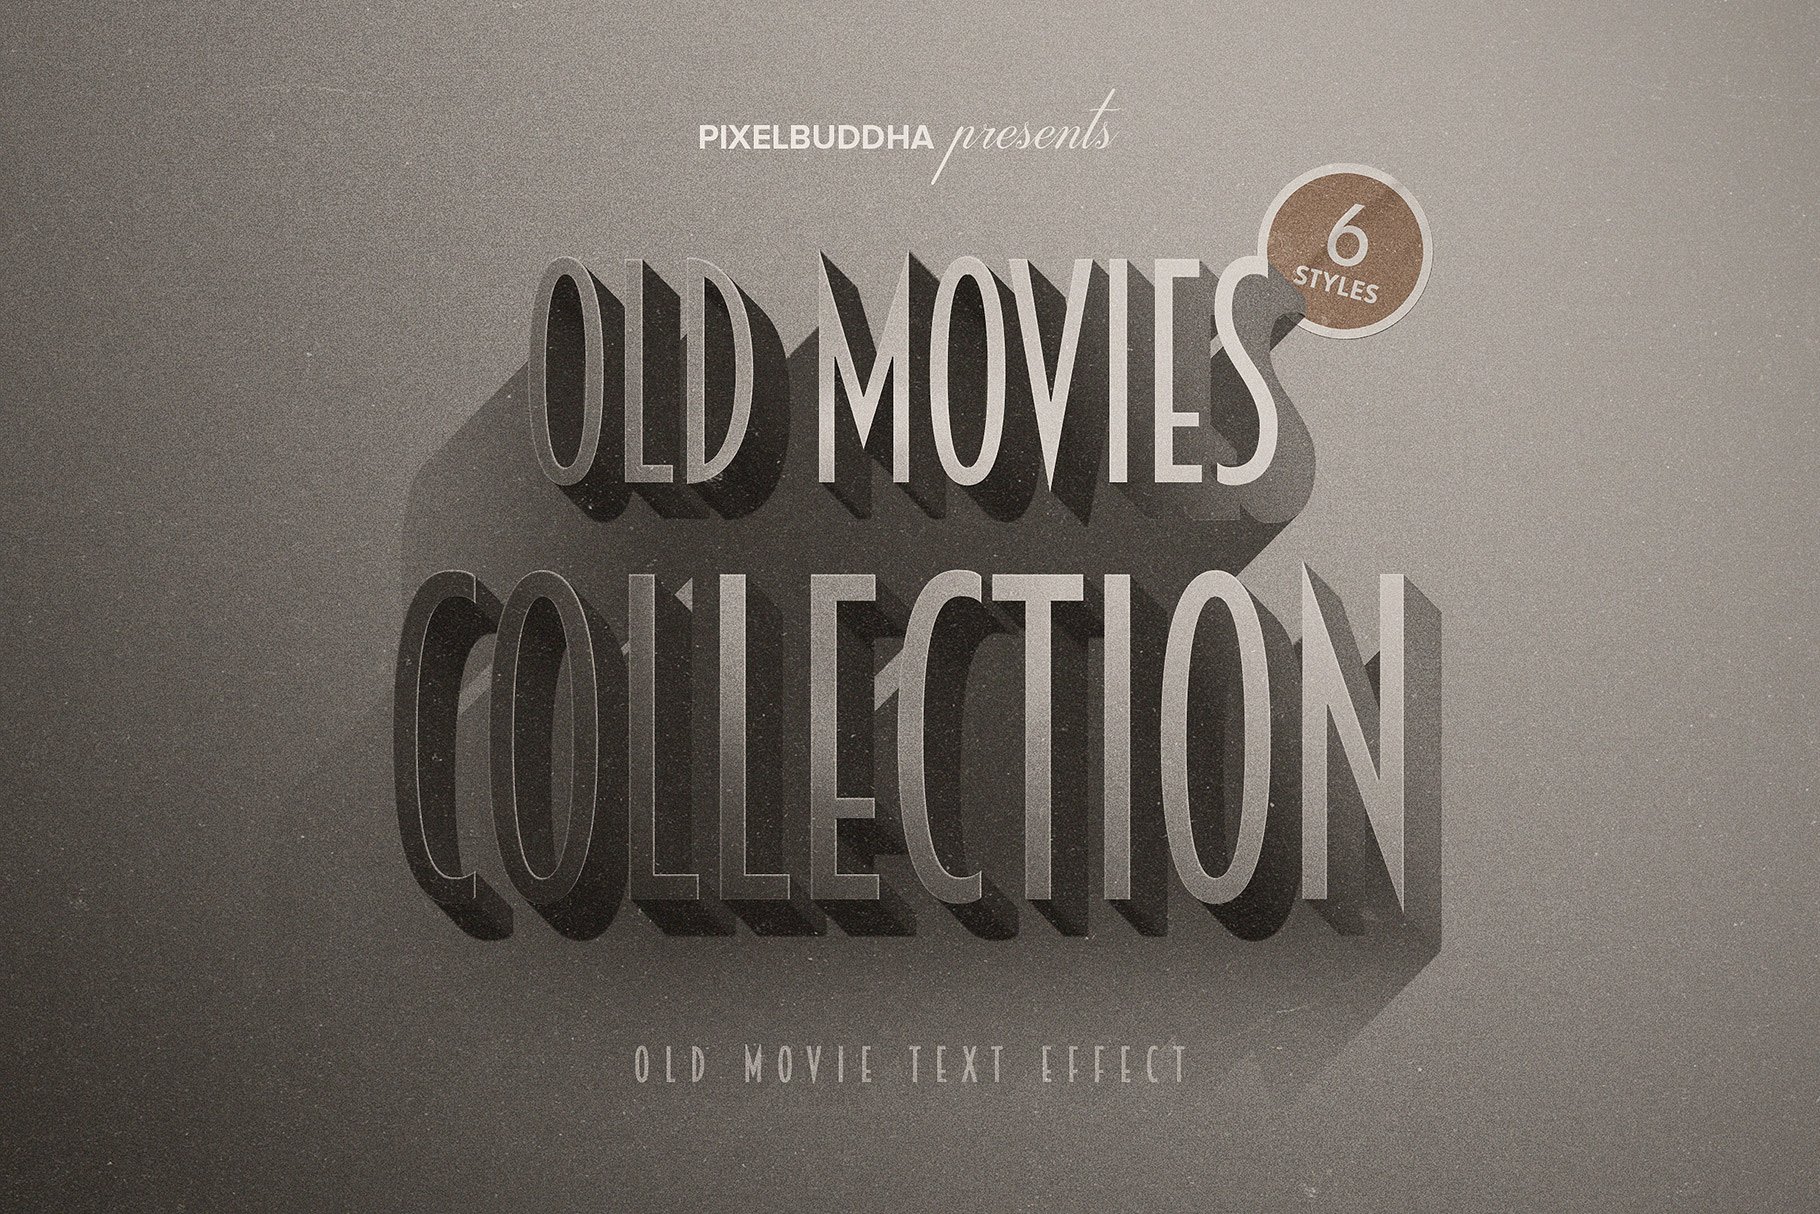 复古老式电影标题的图层样式文件下载 Old Movie Titles Collection [psd]插图